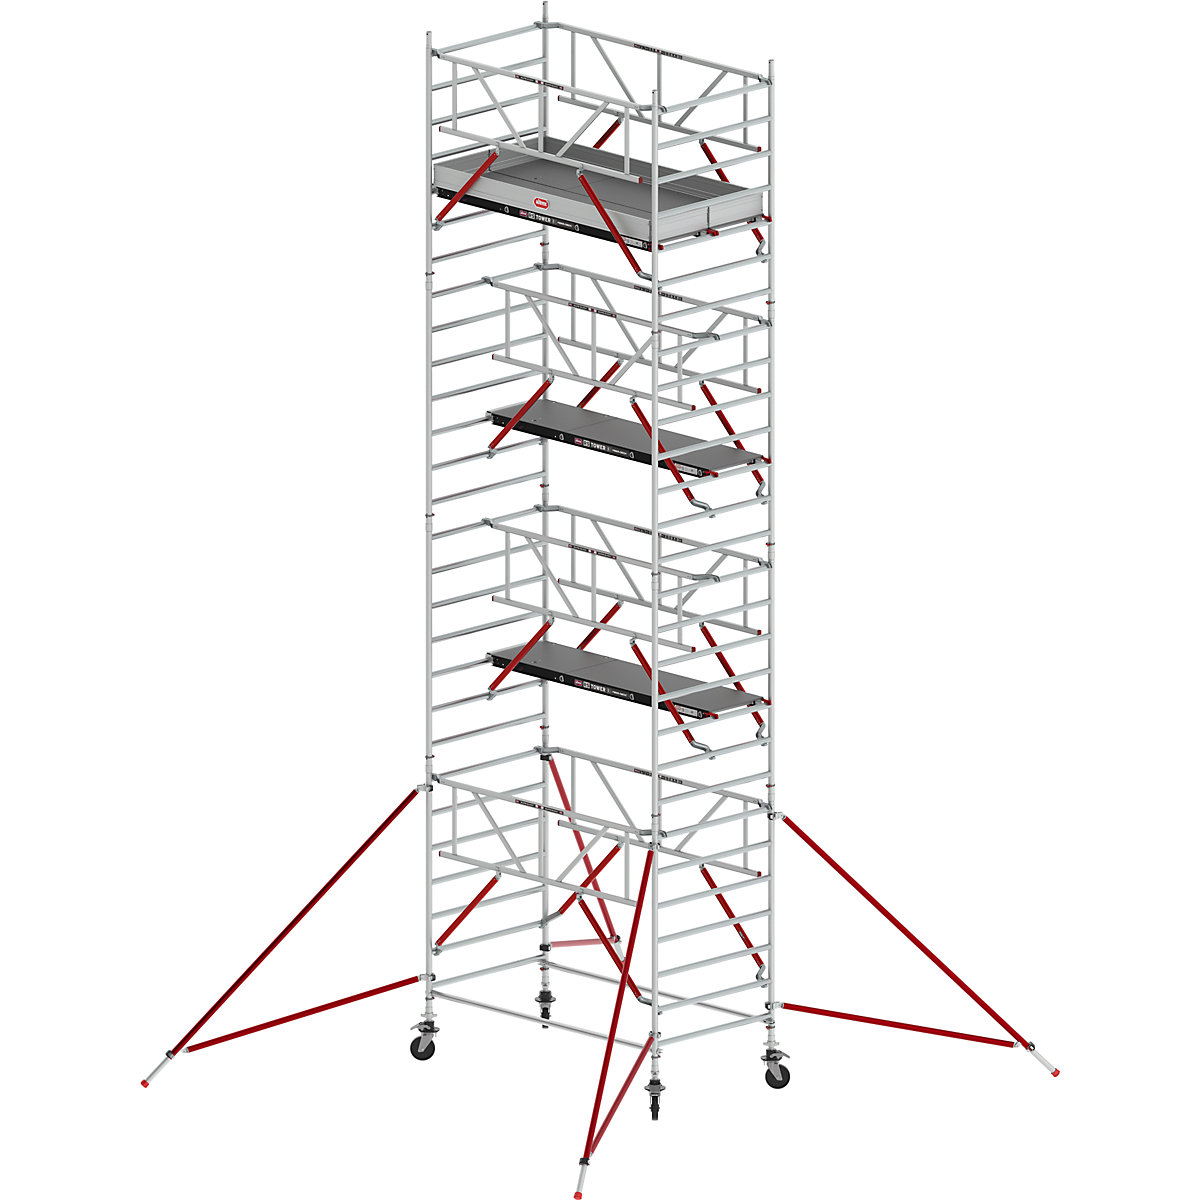 Schelă mobilă RS TOWER 52 lată – Altrex, cu platformă din lemn, lungime 2,45 m, înălțime de lucru 9,20 m-4